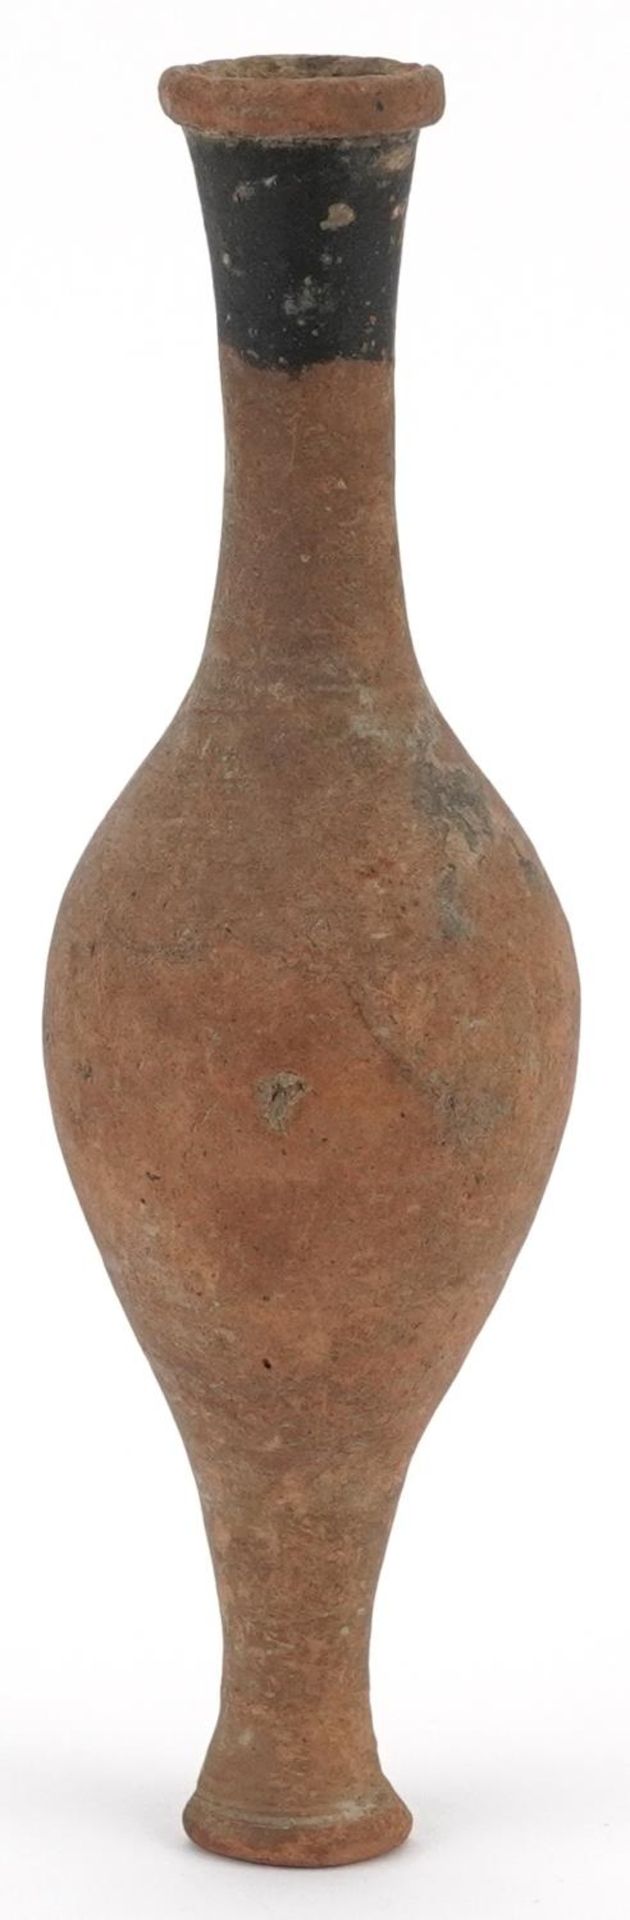 Antique terracotta fusiform unguentarium, possibly Roman, 18cm high